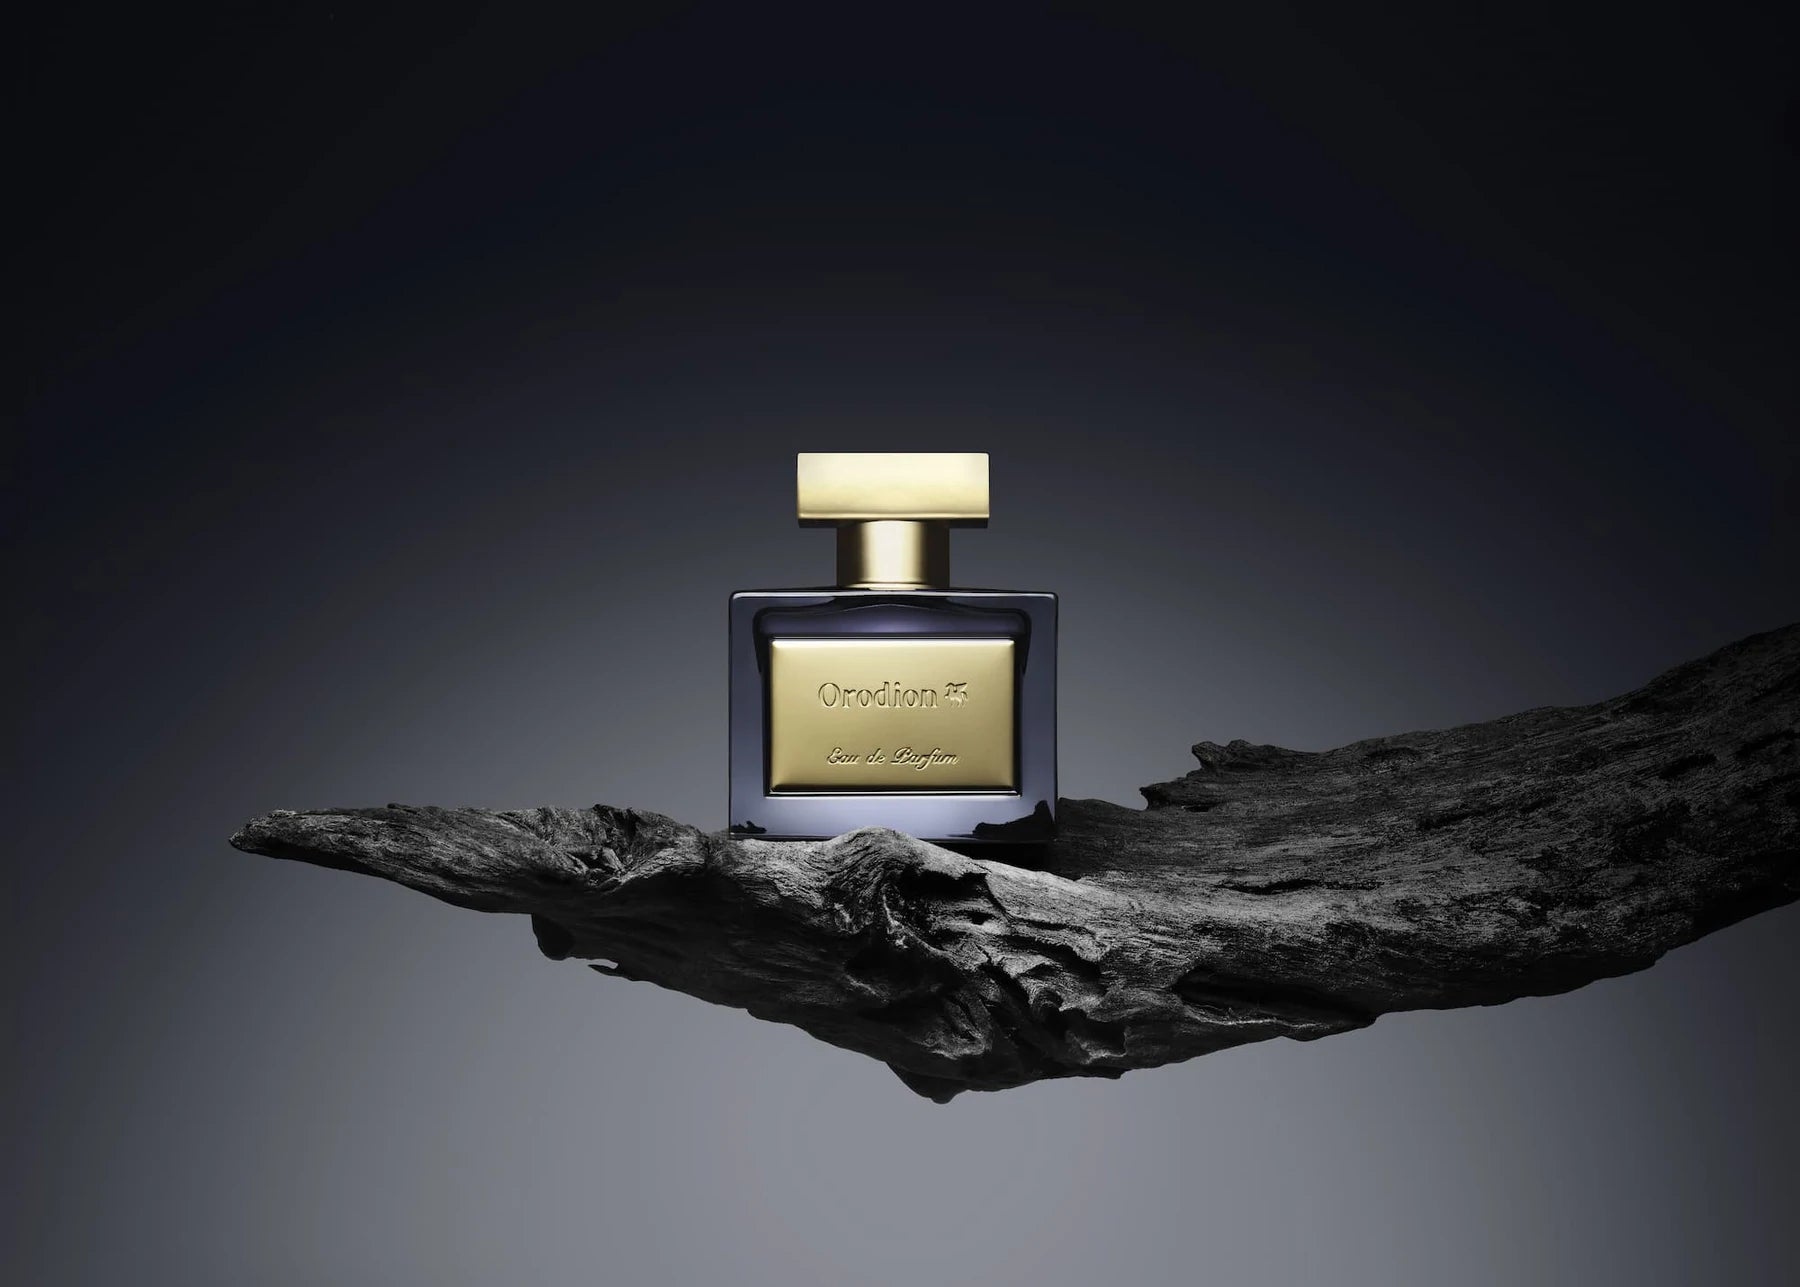 Orodion von Justin - Das verbirgt sich hinter der neuen Parfum-Marke!